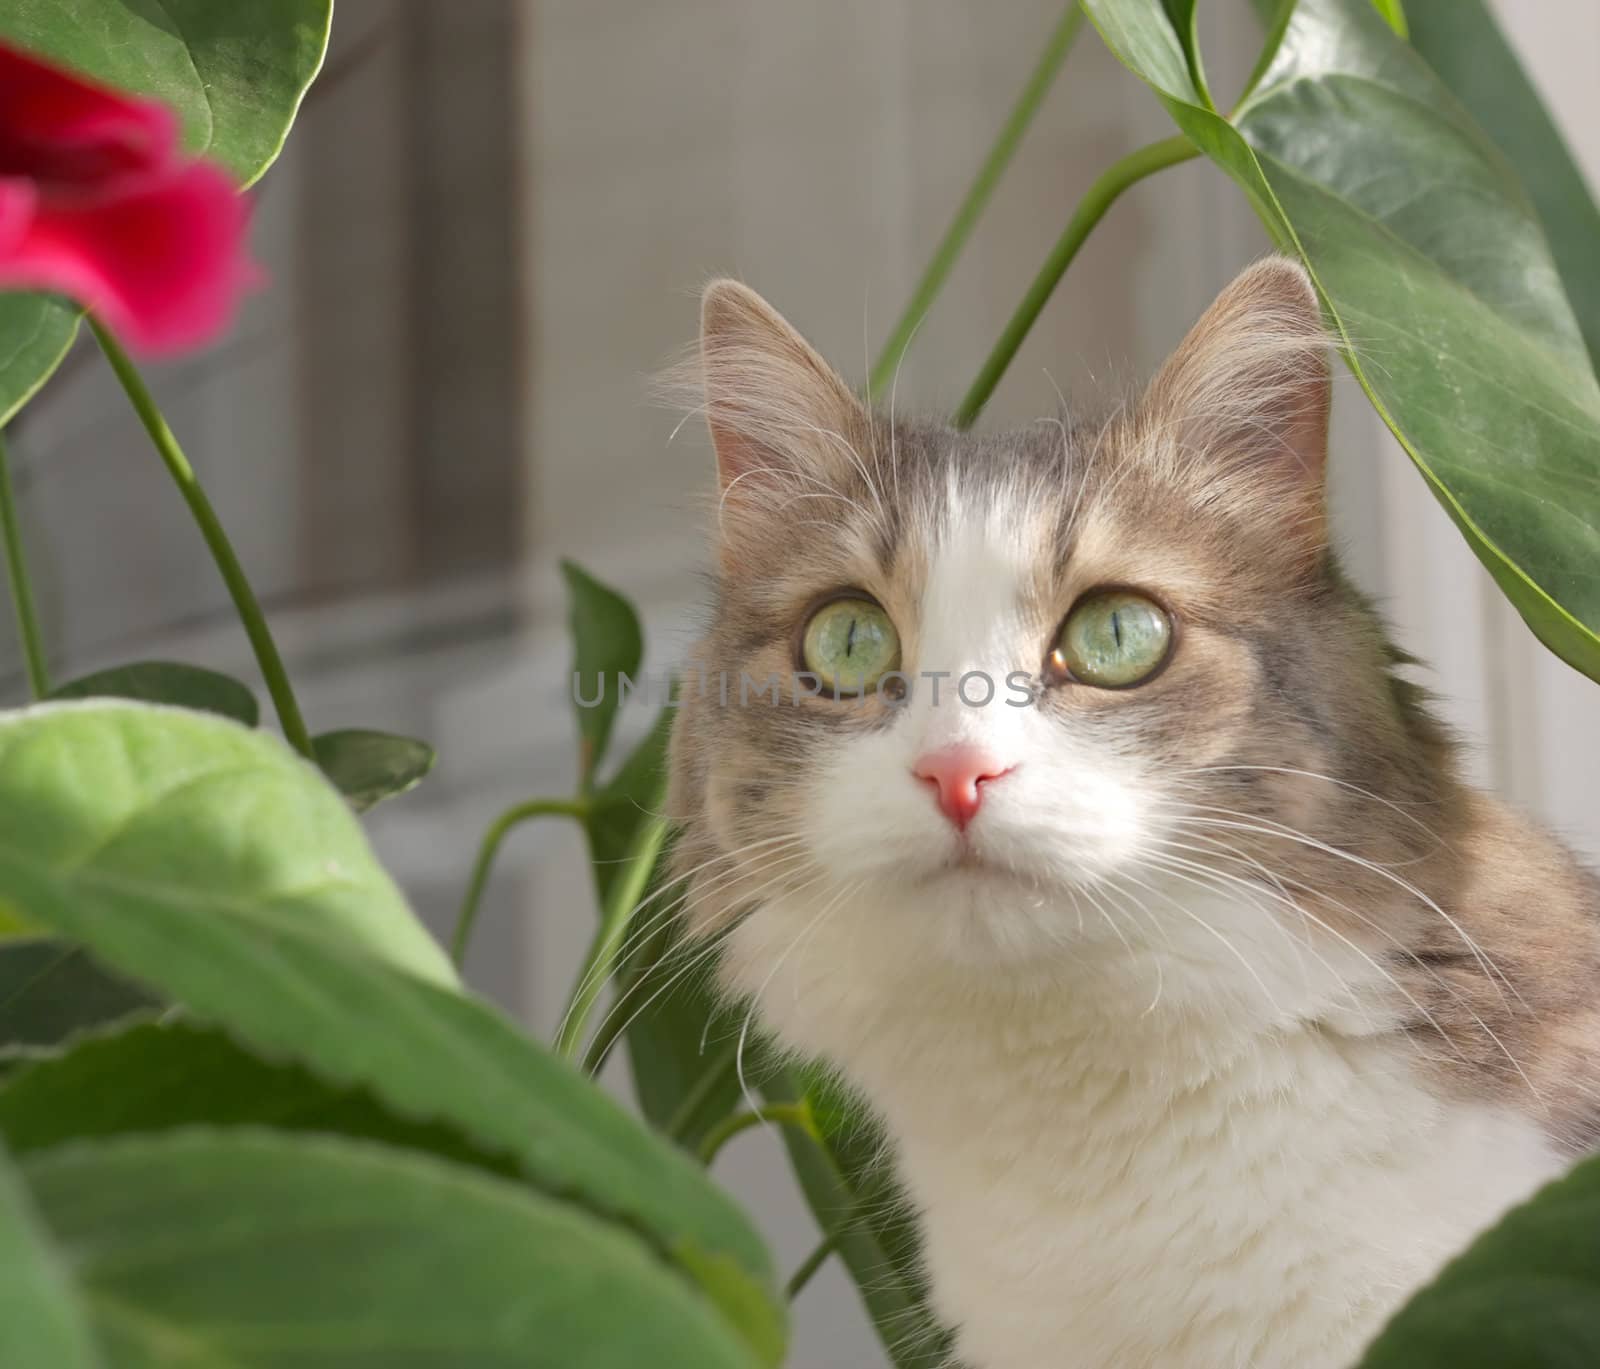 Cat near leaves of flower by sergpet